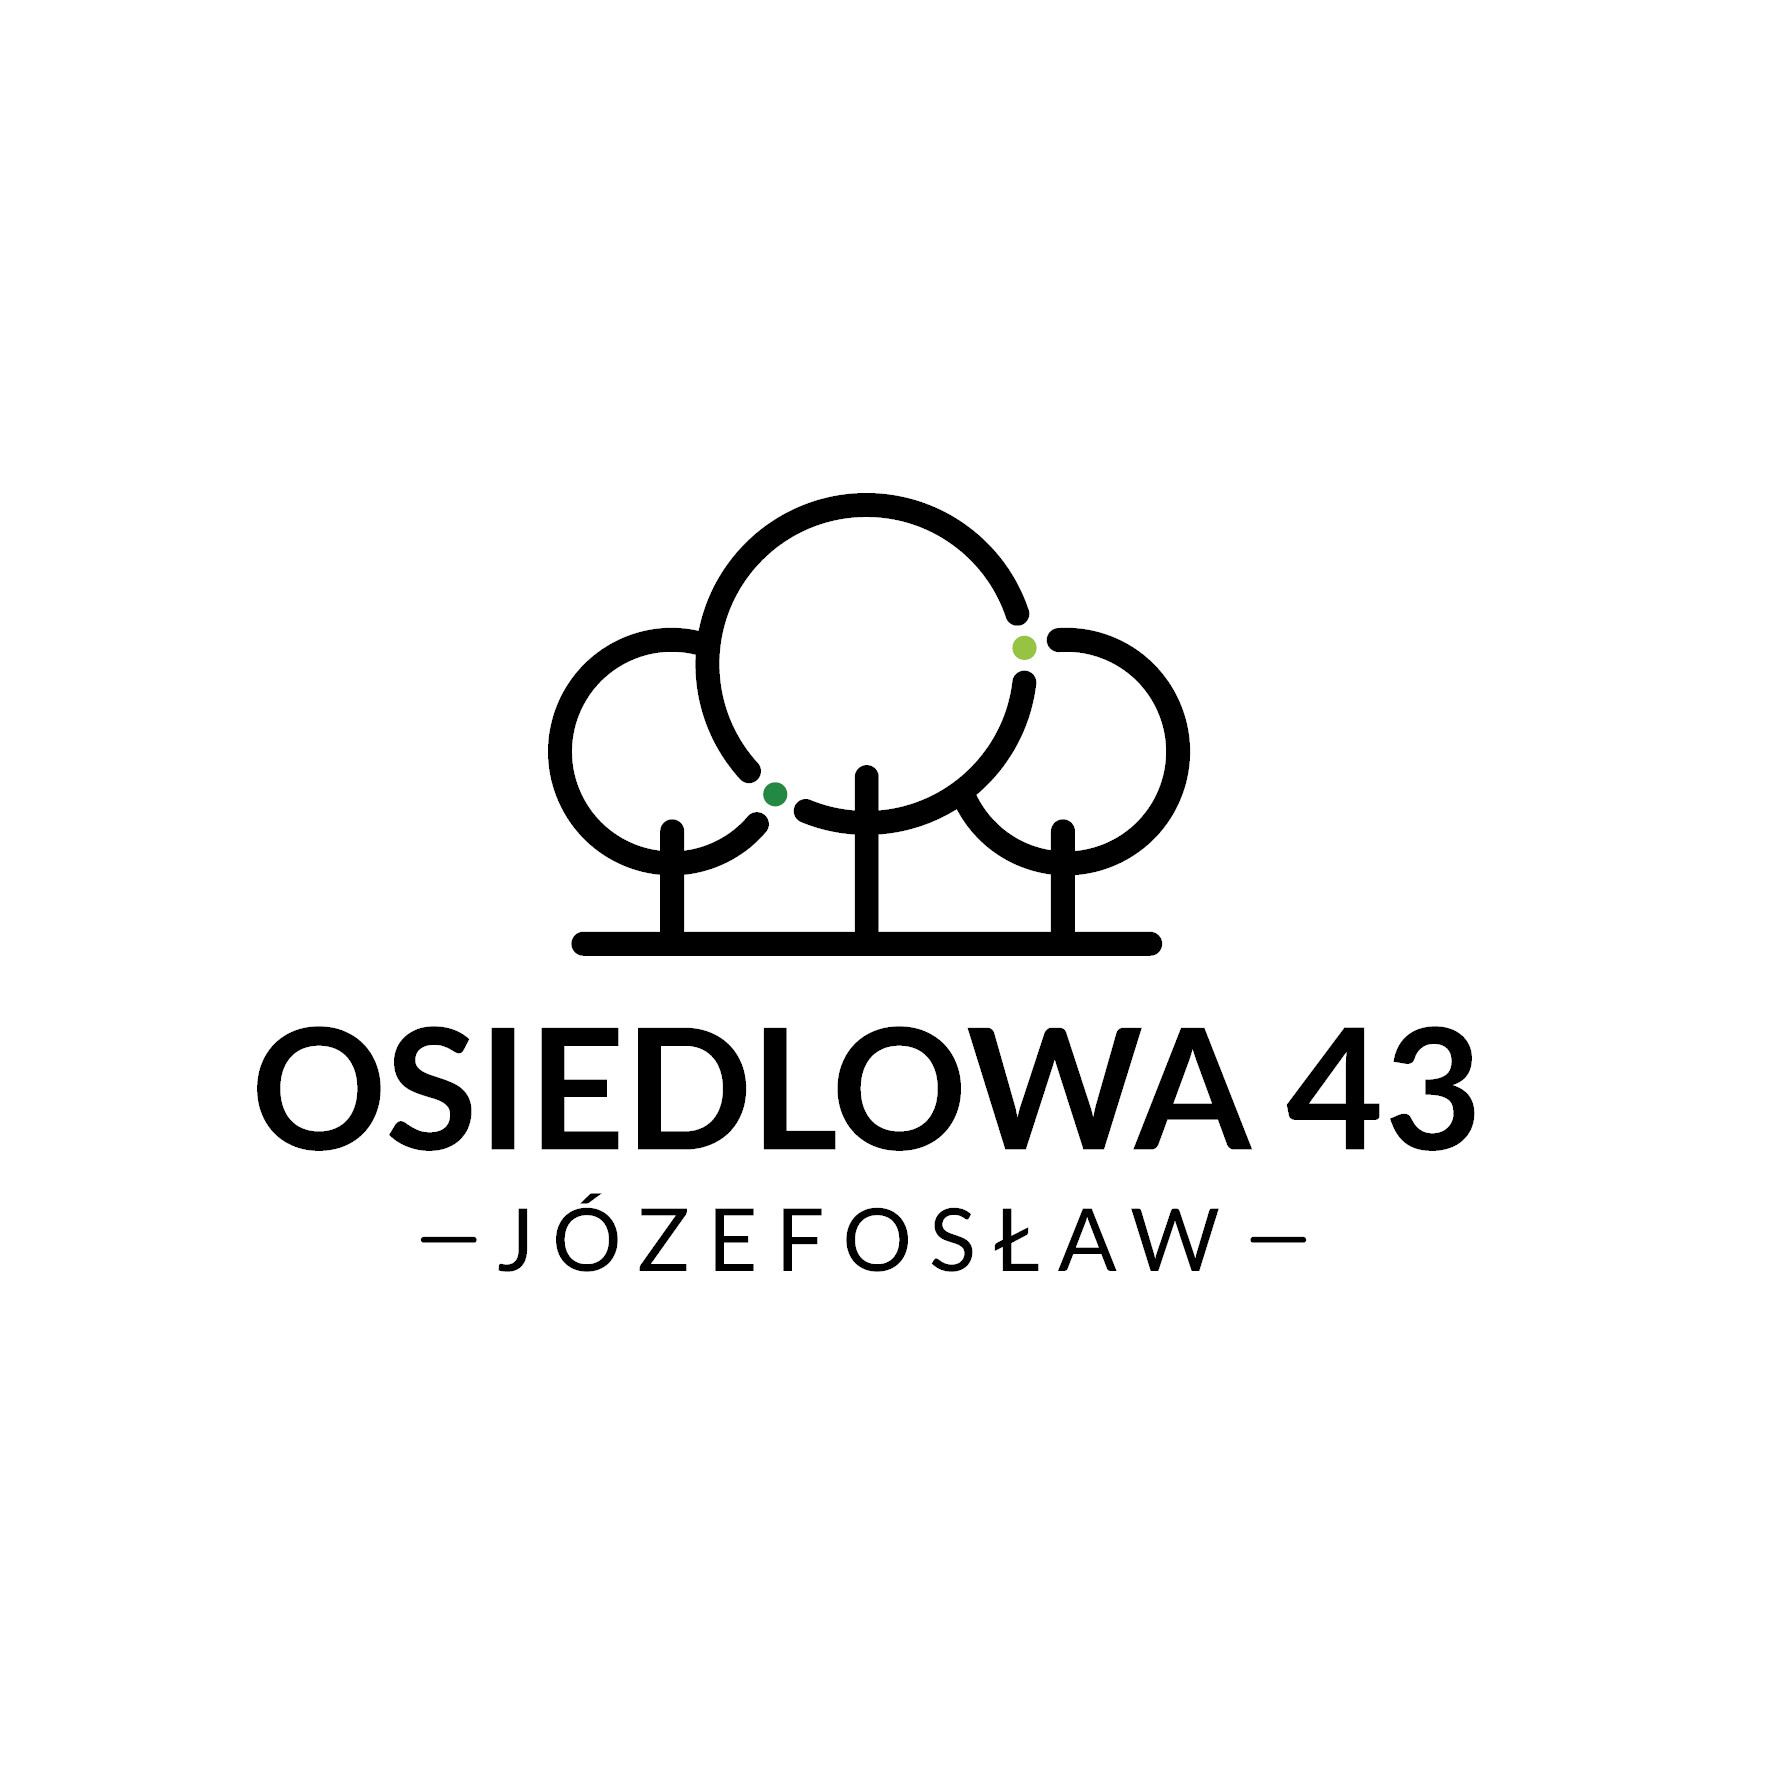 Osiedle pod Warszawą - Osiedlowa 43